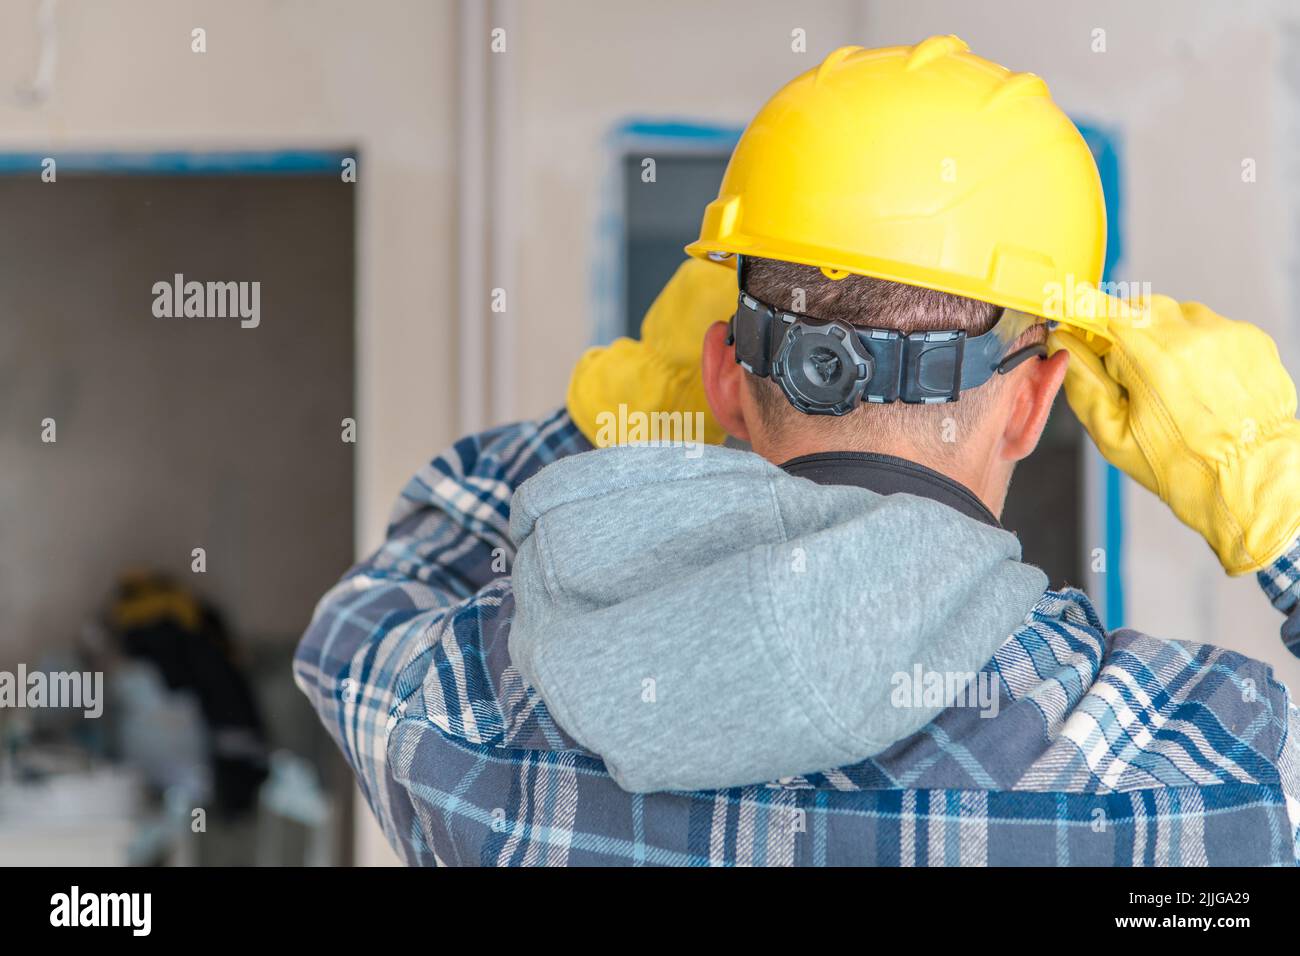 Lavoratore di appaltatore caucasico che indossa il suo casco di sicurezza giallo regolabile prima di entrare in un cantiere per iniziare il suo lavoro. Vista posteriore. Foto Stock